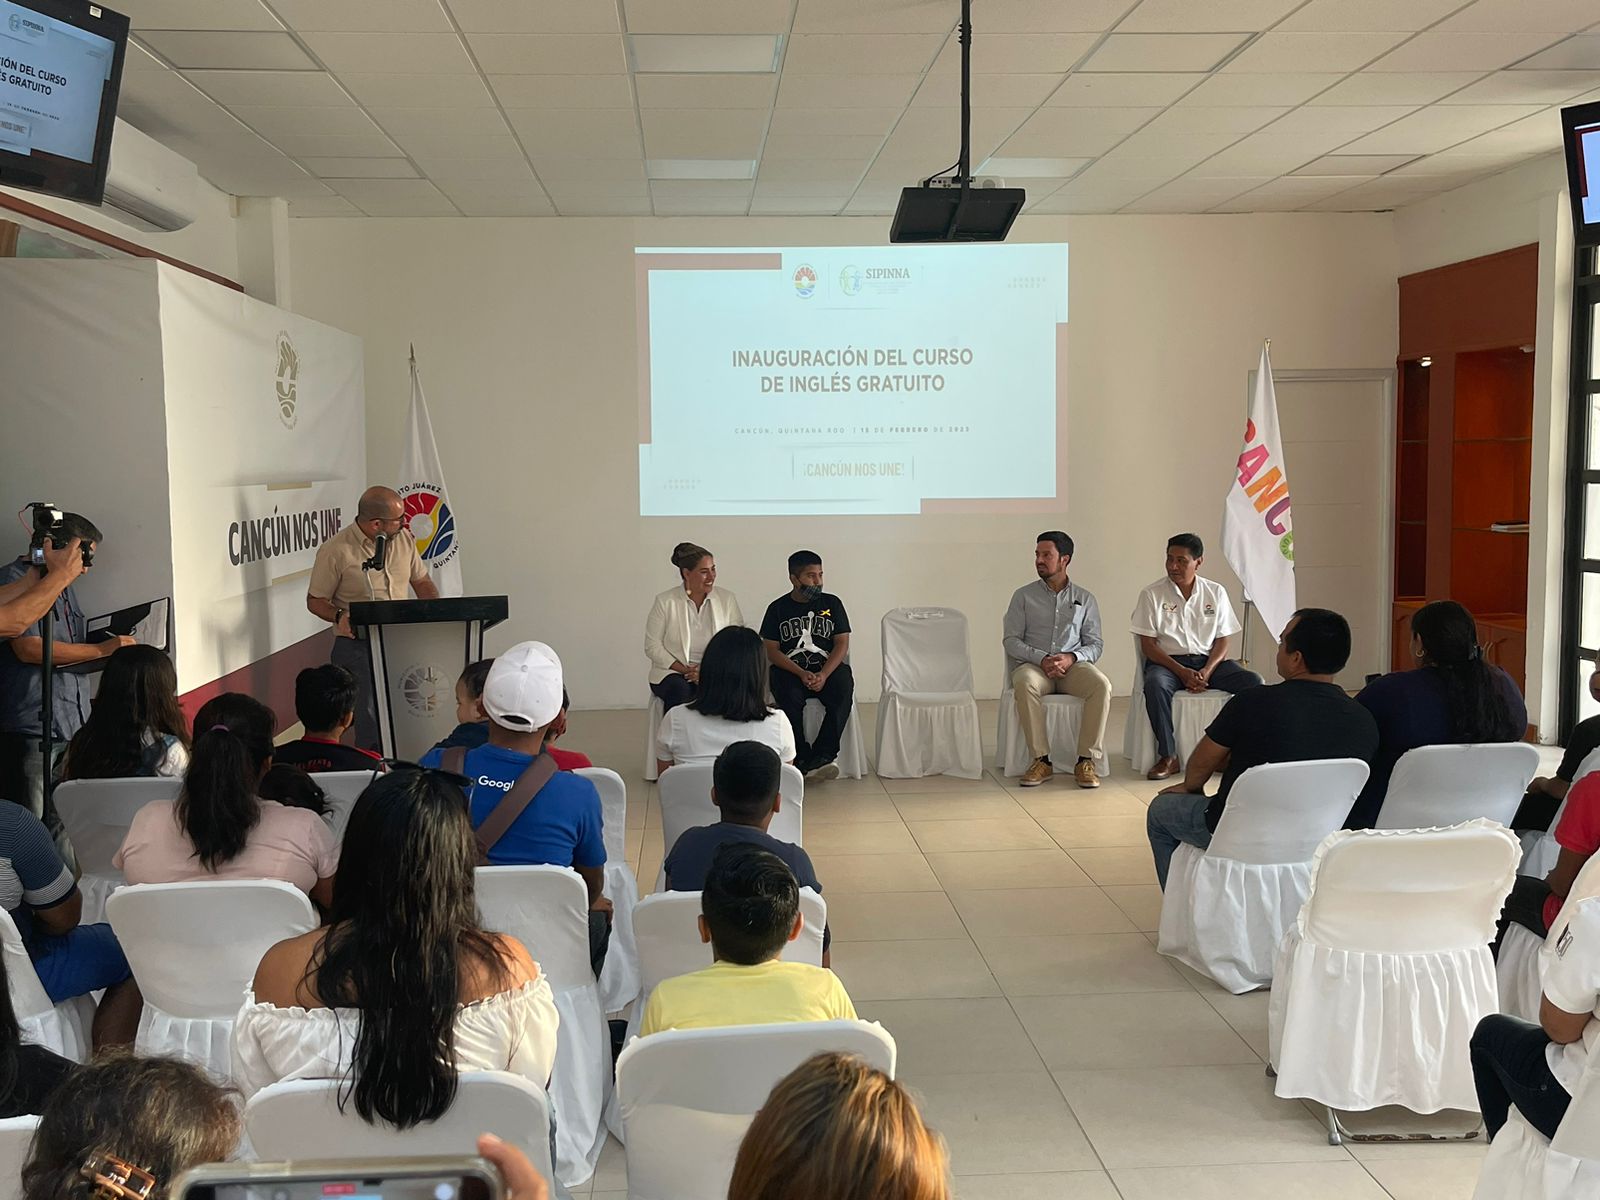 Refuerza gobierno educación de jóvenes cancunenses